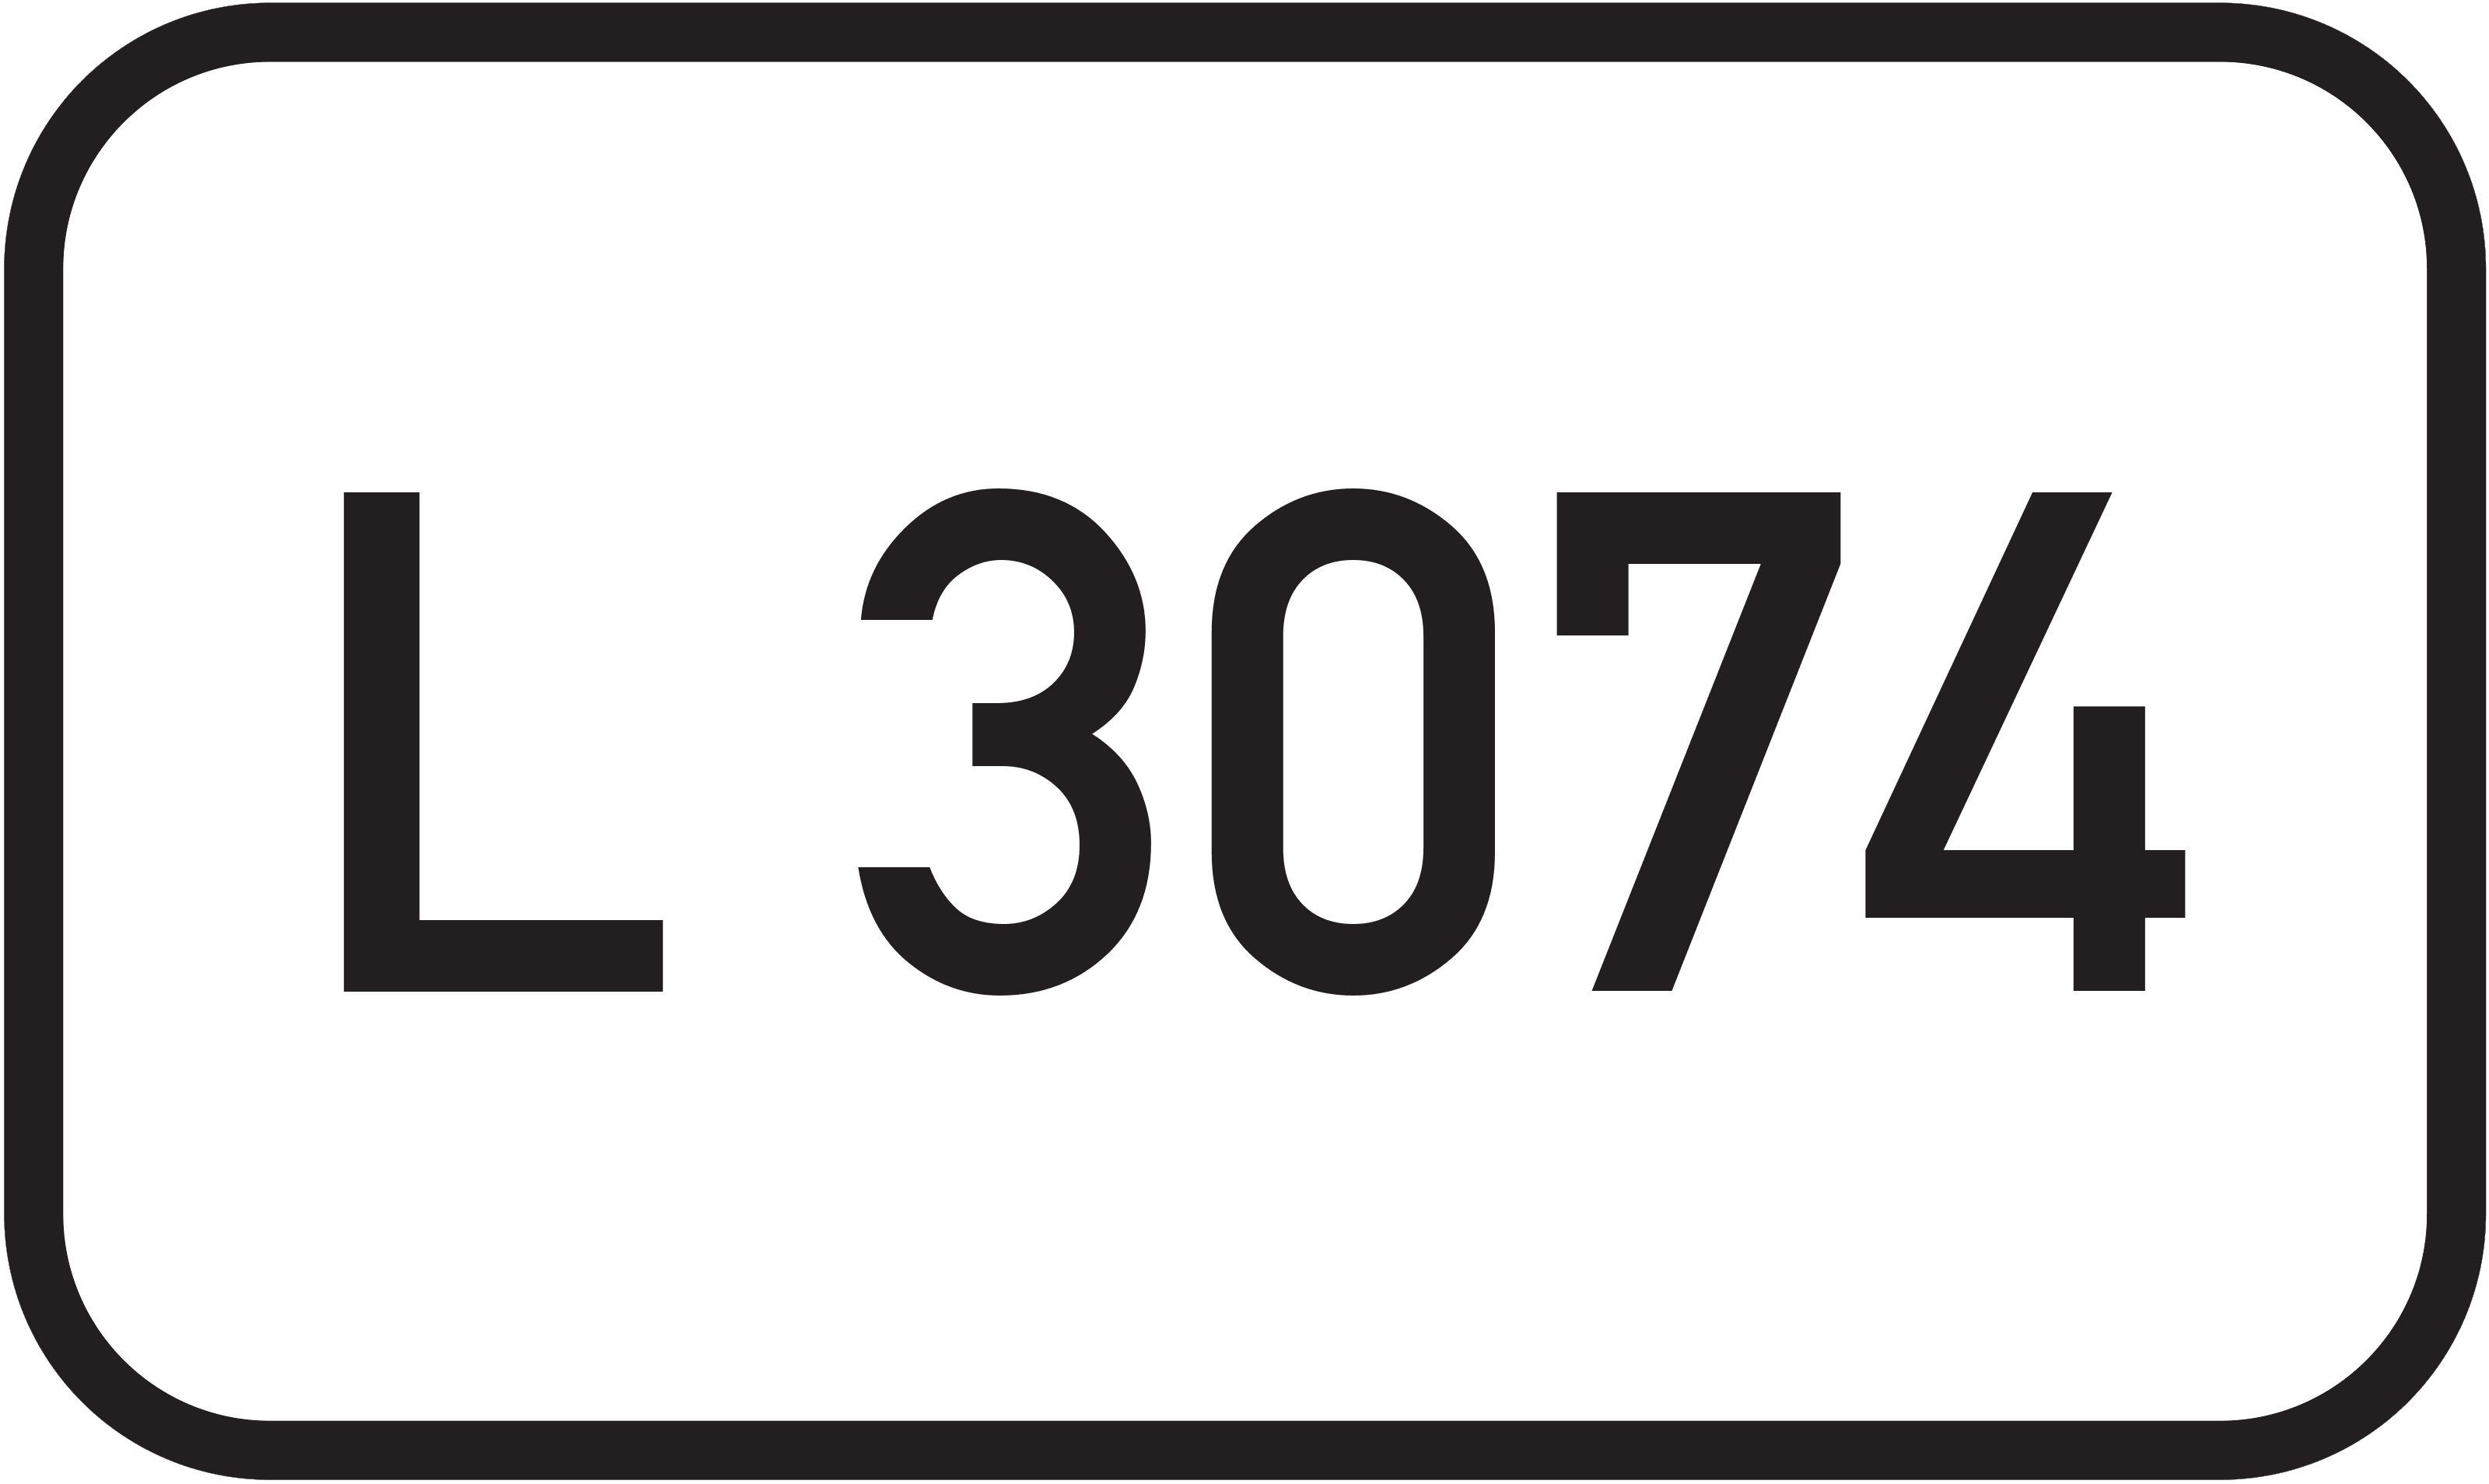 Landesstraße L 3074